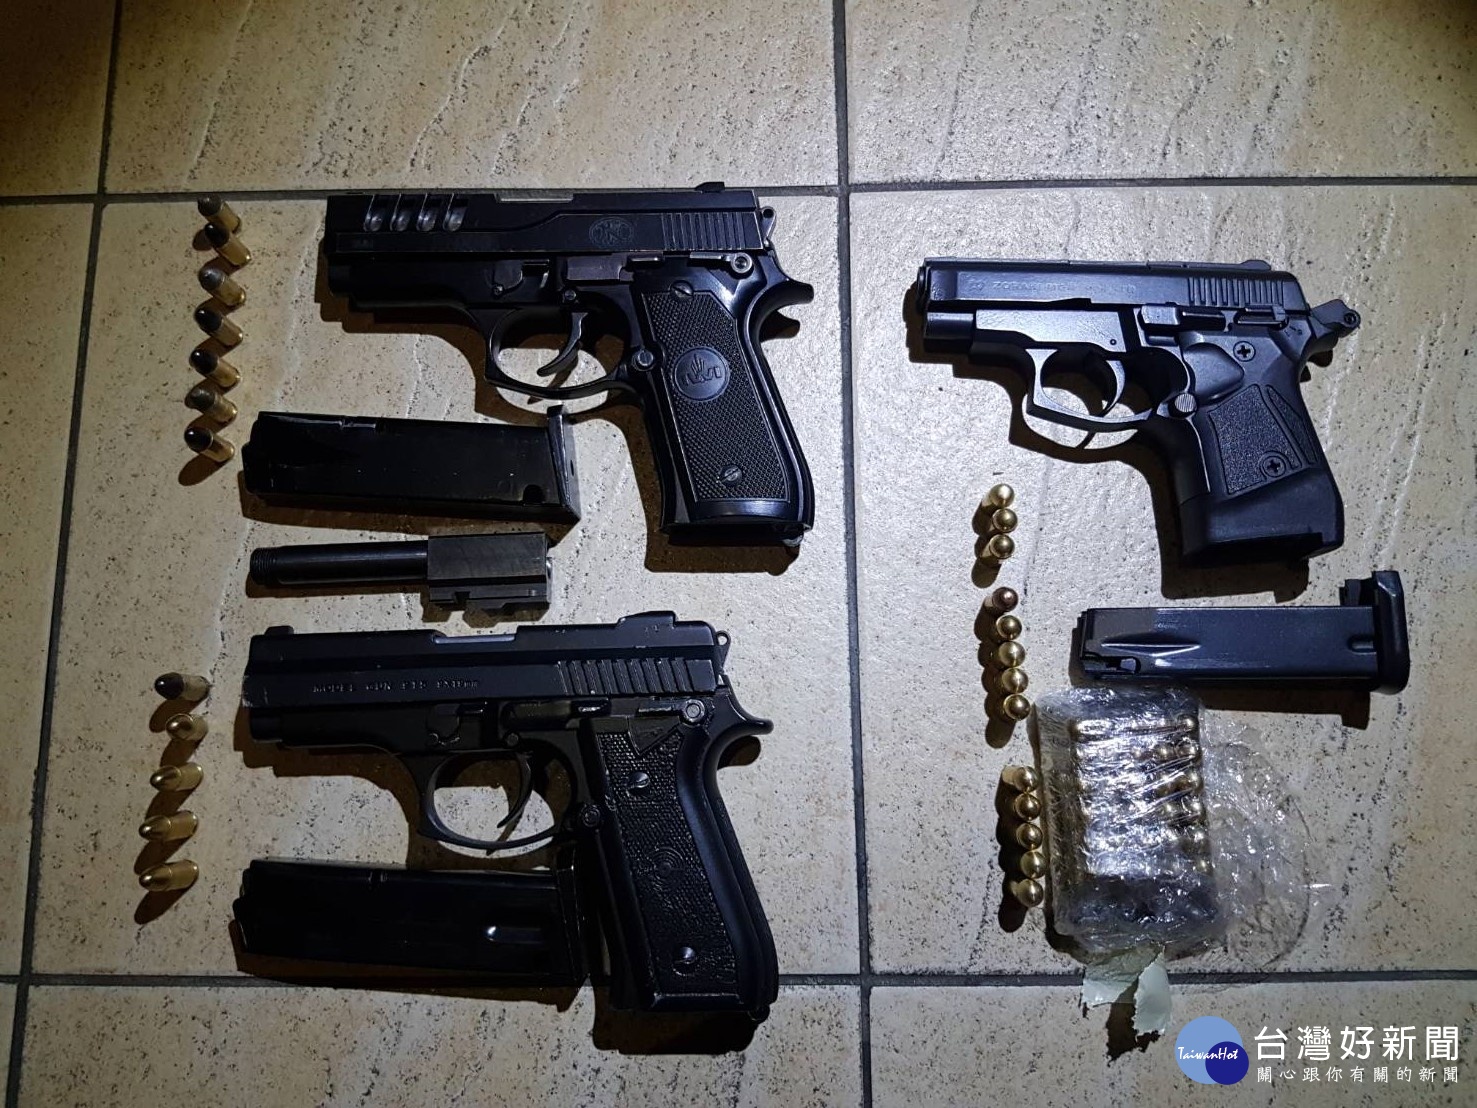 警方現場查獲槍彈（制式手槍1支、改造手槍2支，子彈55顆）等犯罪證據。